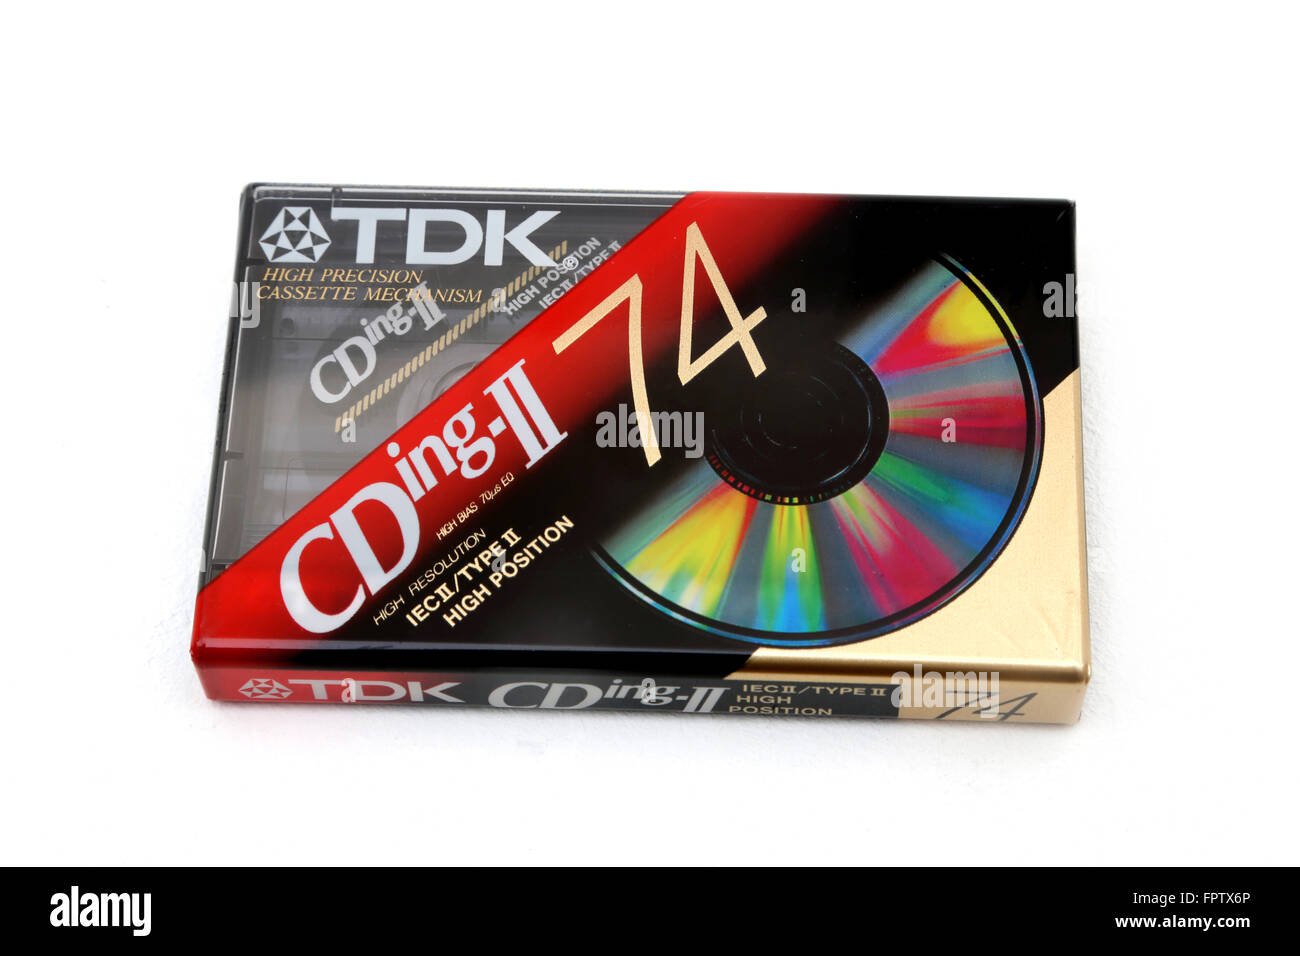 TDK Cassette Tape Stock Photo